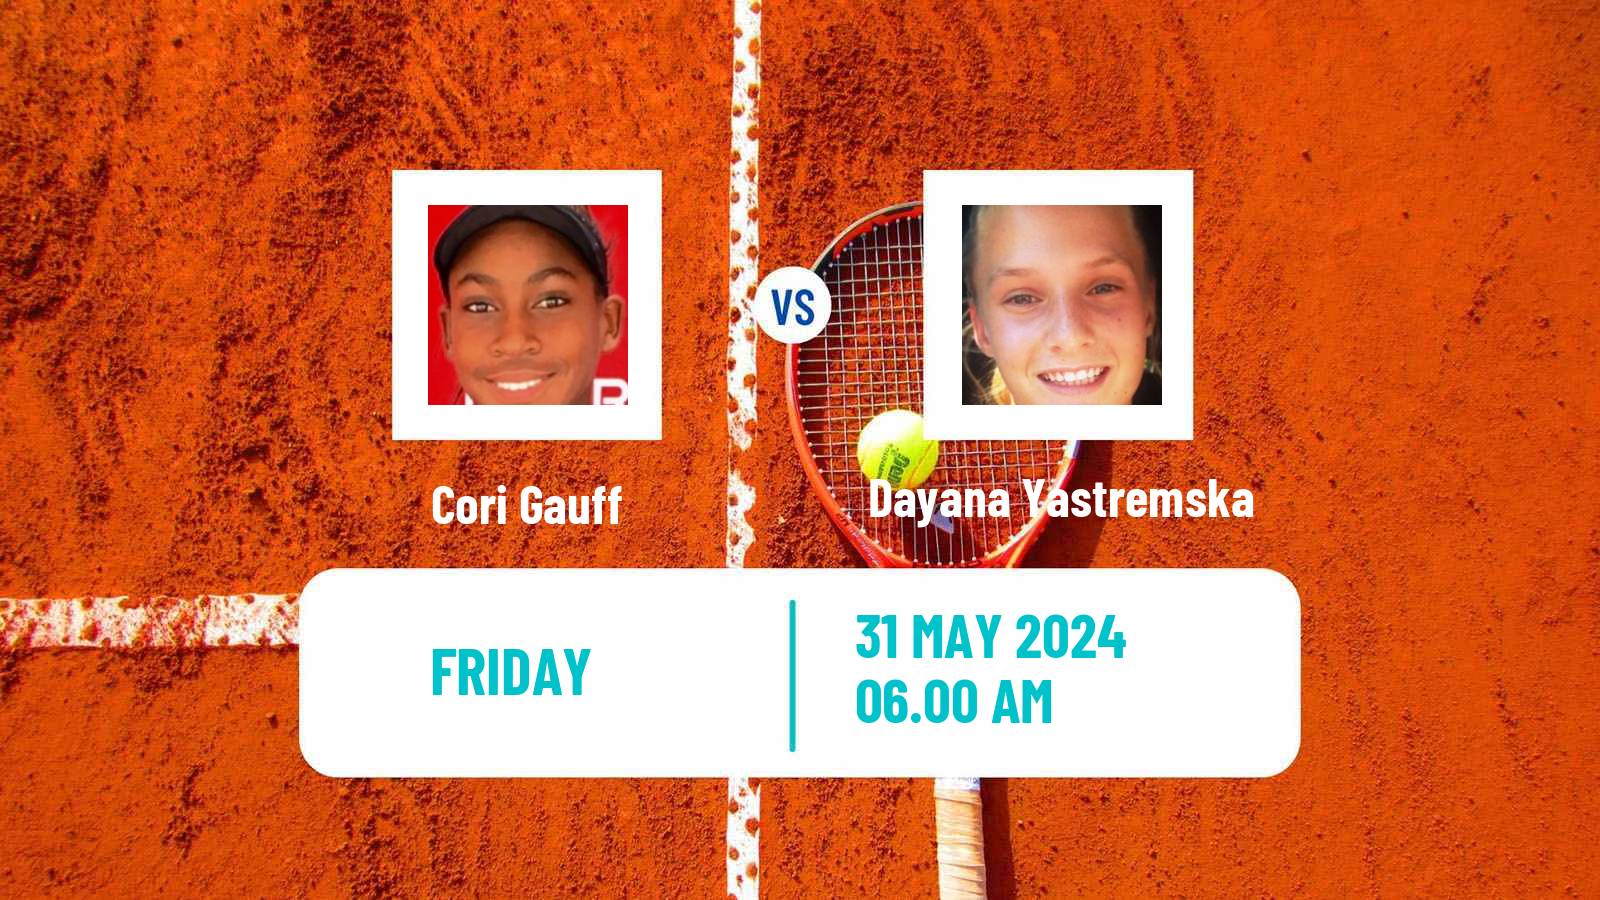 Tennis WTA Roland Garros Cori Gauff - Dayana Yastremska